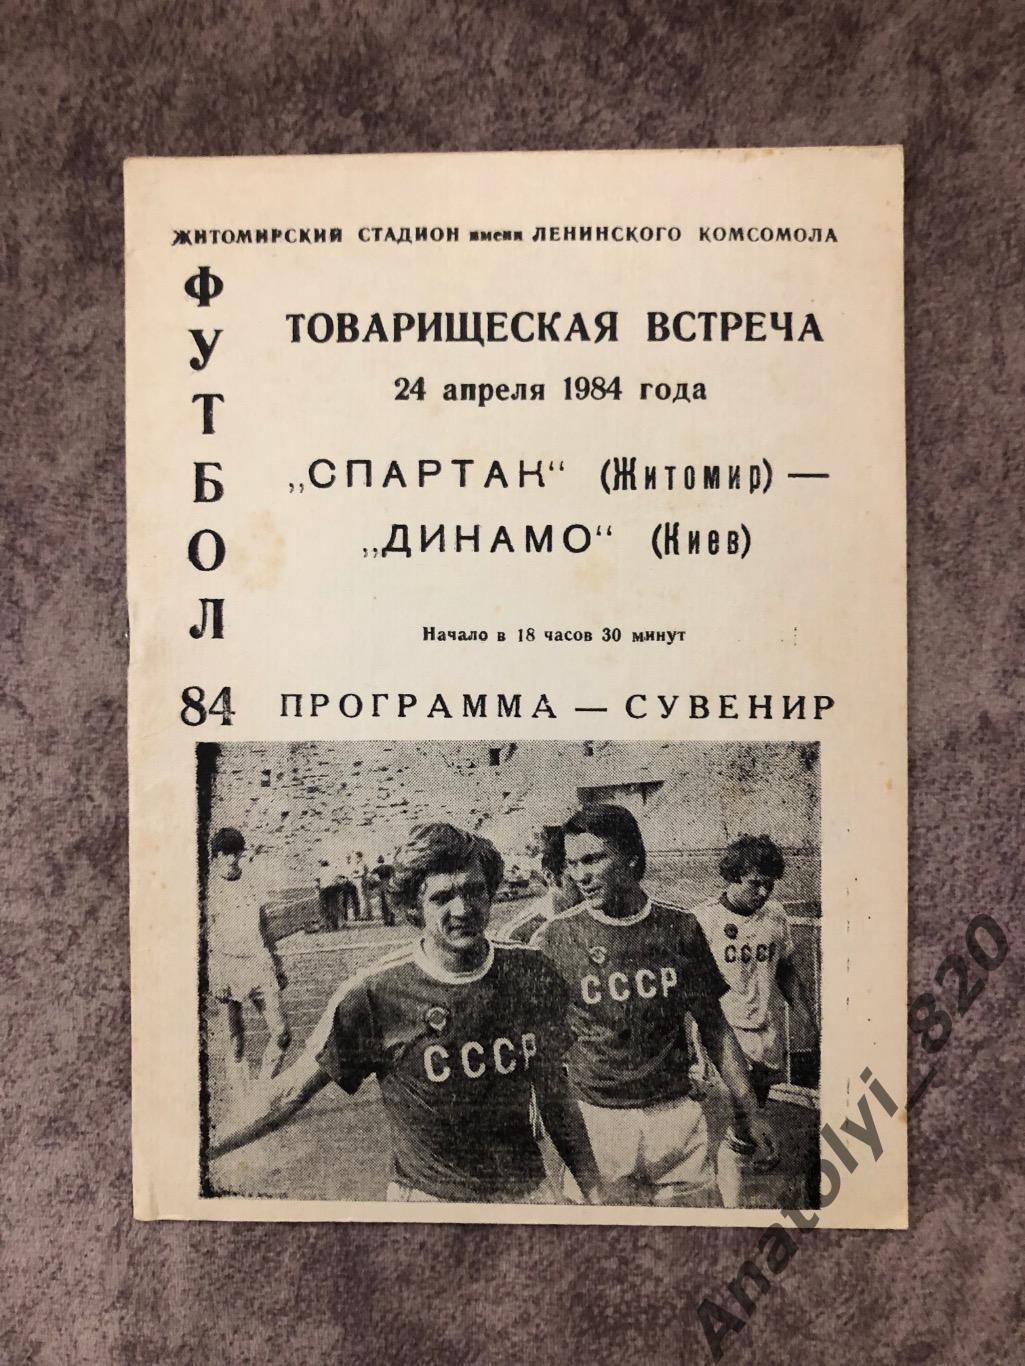 Спартак Житомир - Динамо Киев 1984 год товарищеский матч